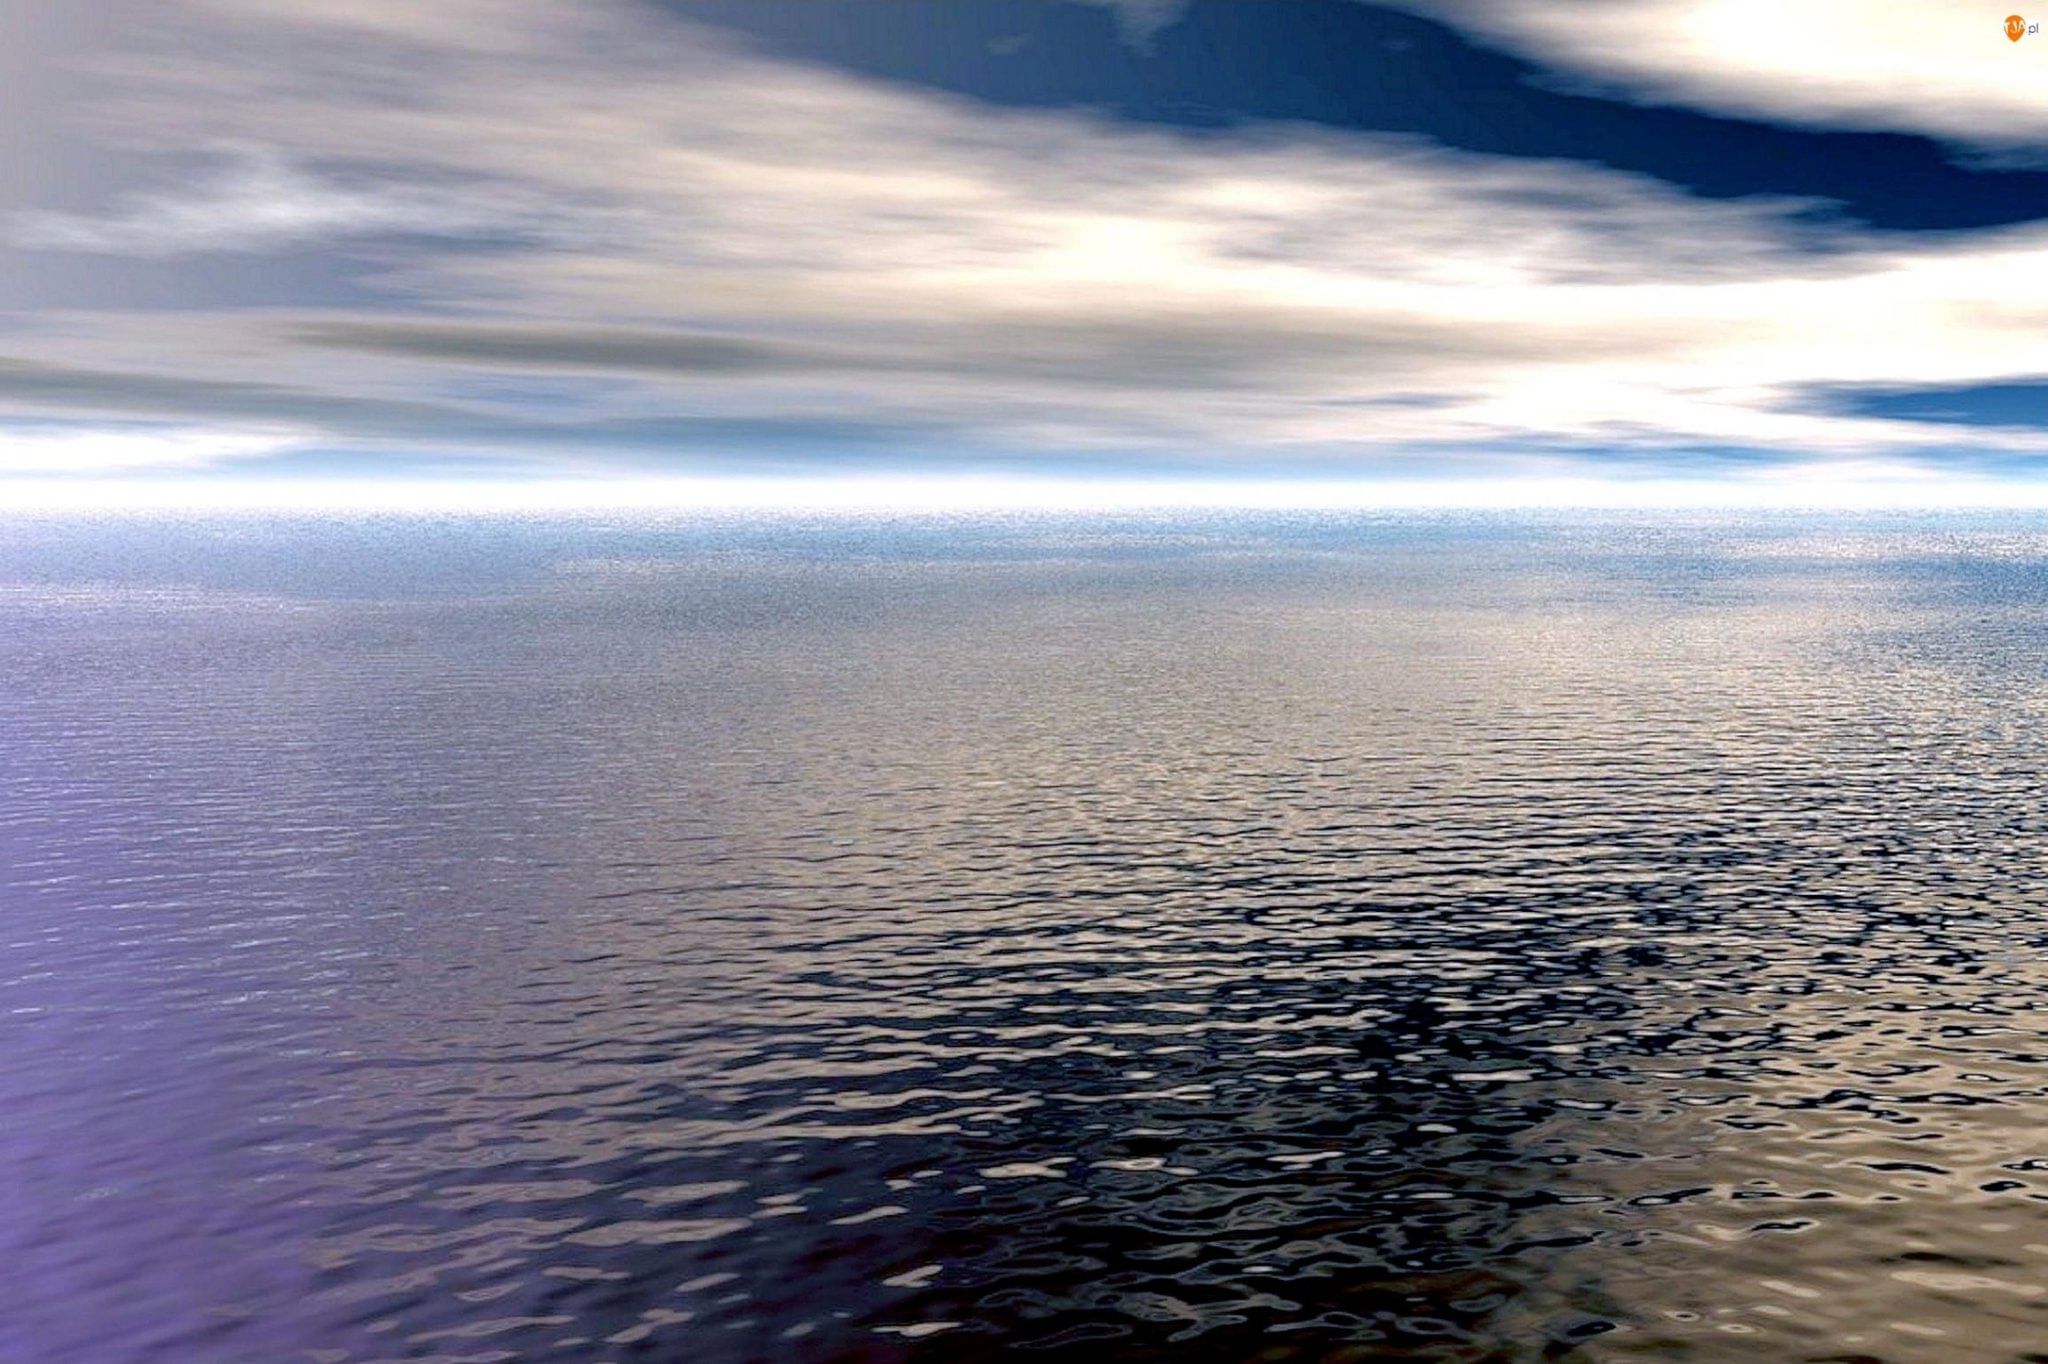 Глубокая тихая вода лакированно блестела словно. Водная гладь. Гладь океана. Поверхность моря. Зеркальная гладь воды.